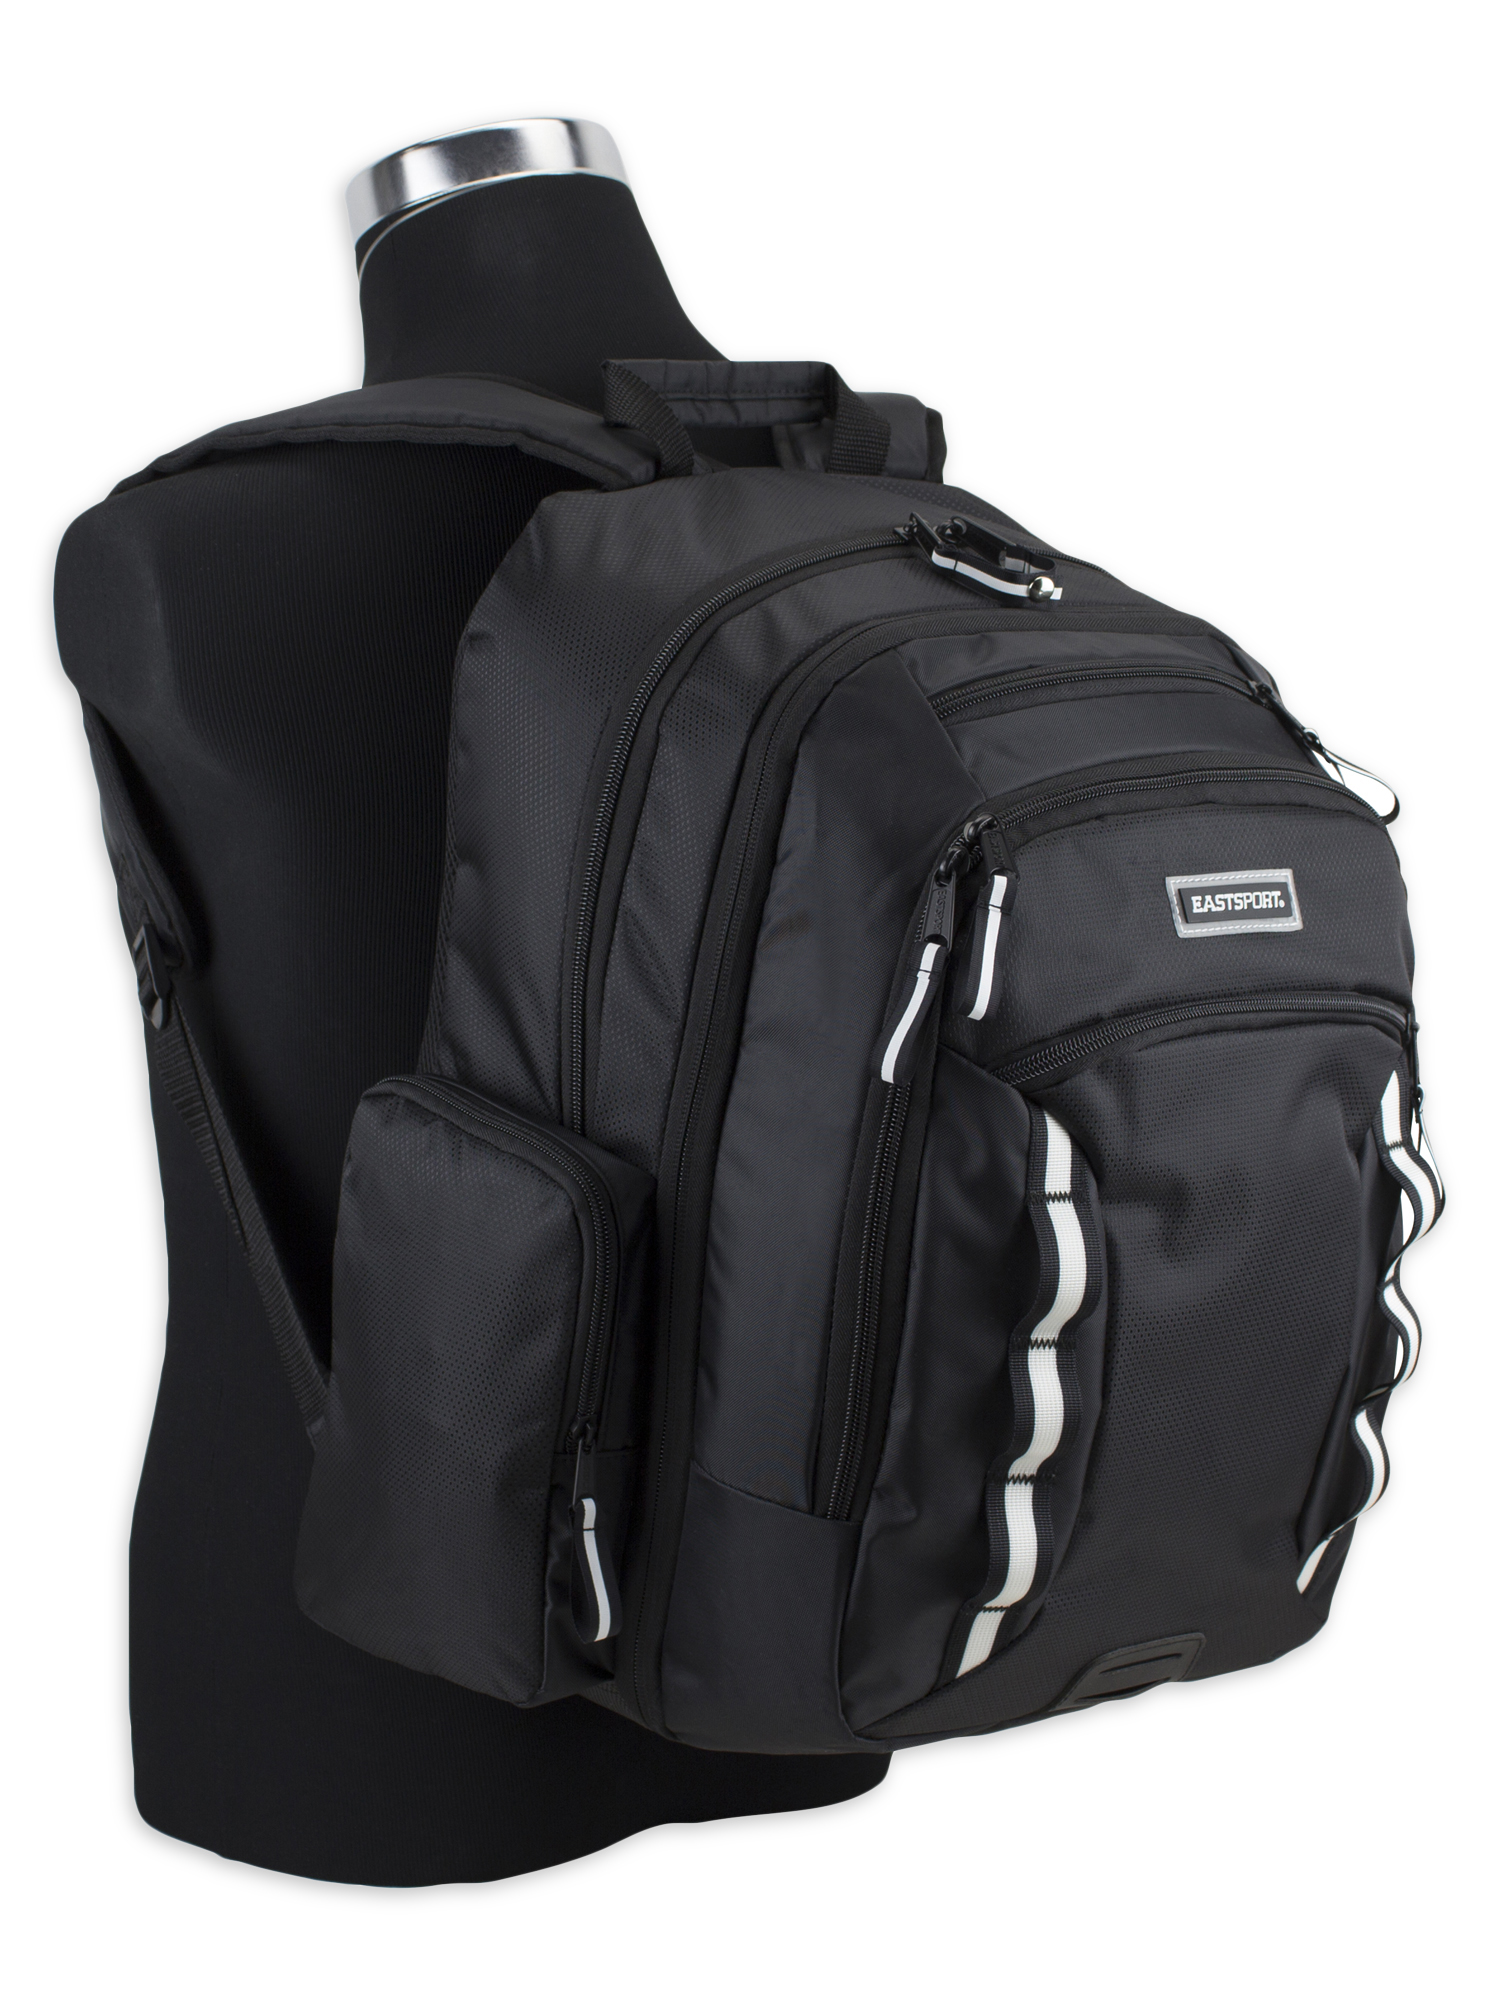 Eastsport Odyssey Backpack, Black - image 2 of 7